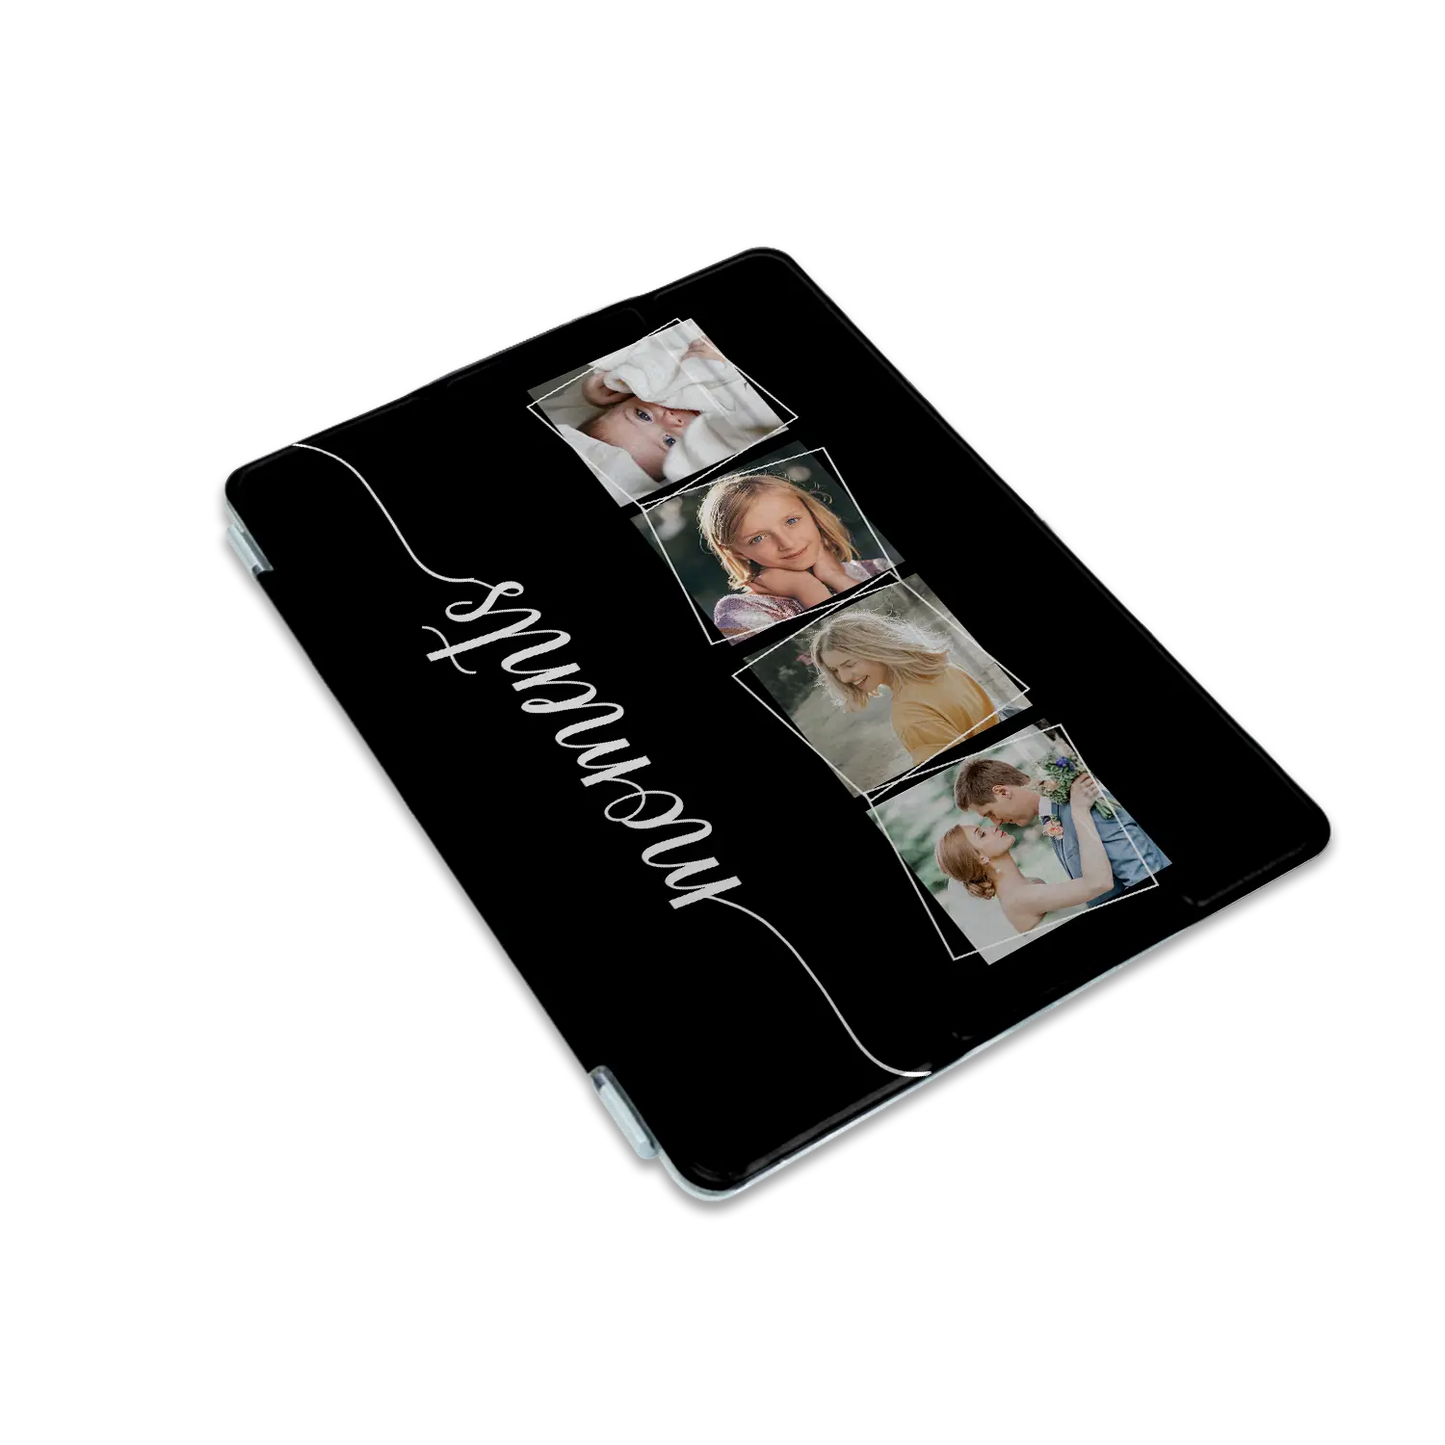 Momentos - iPad personalizado carcasa